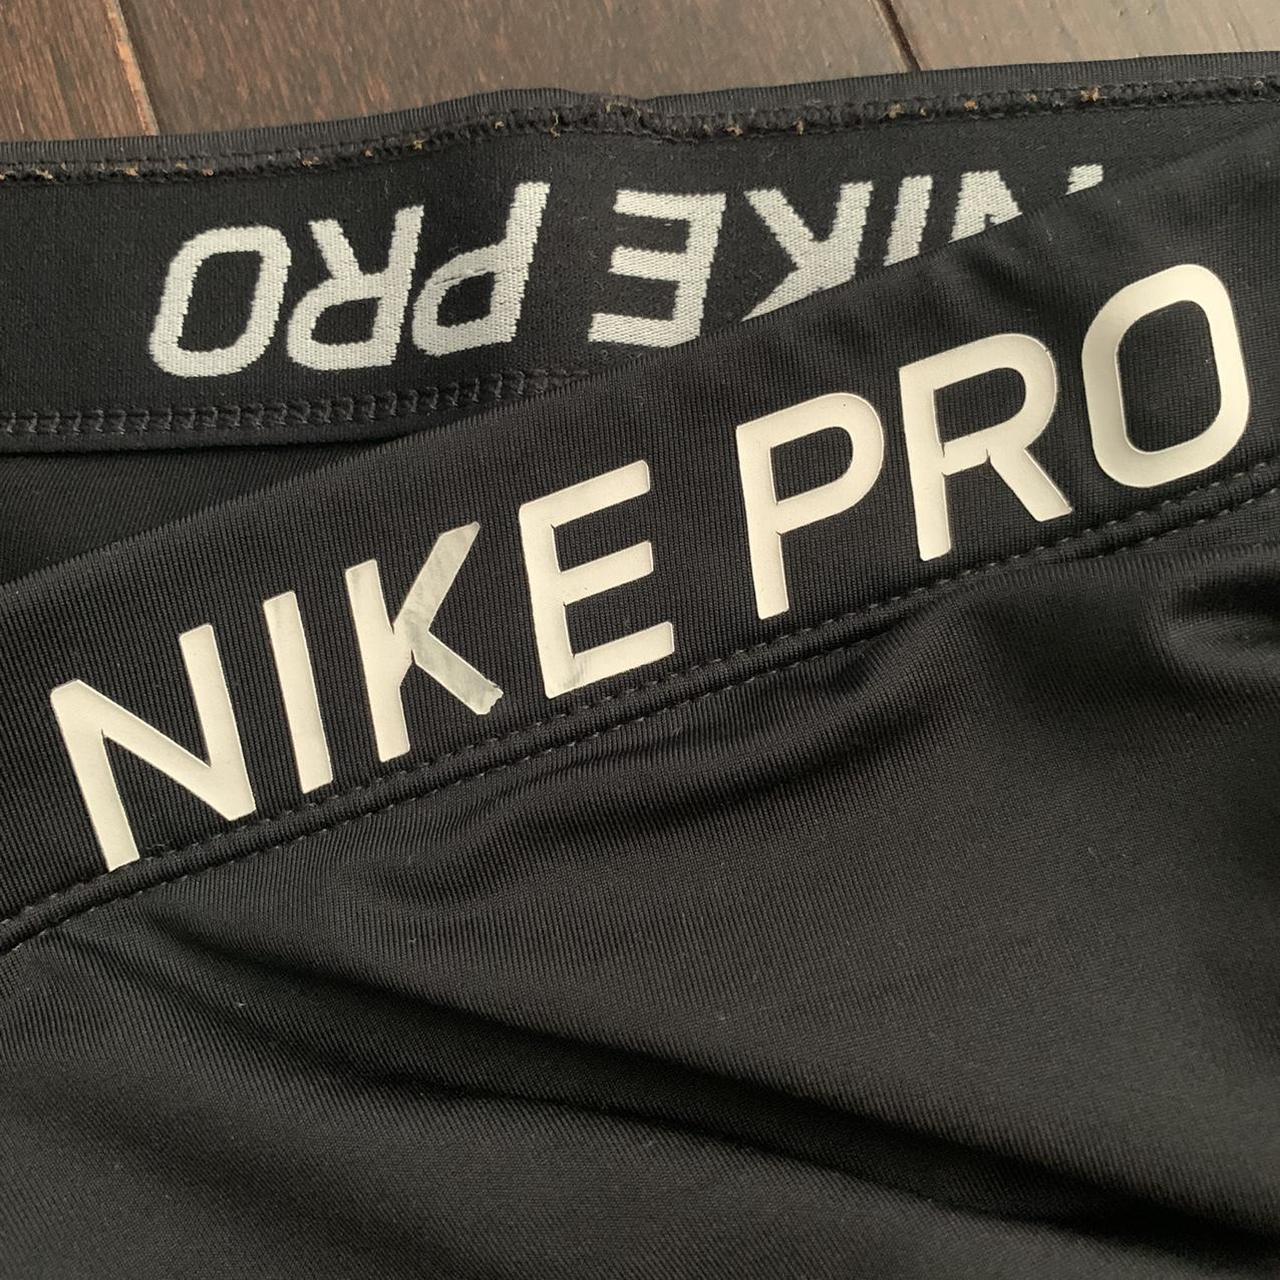 Product Image 3 - Nike Pro Shorts

• Good condition,